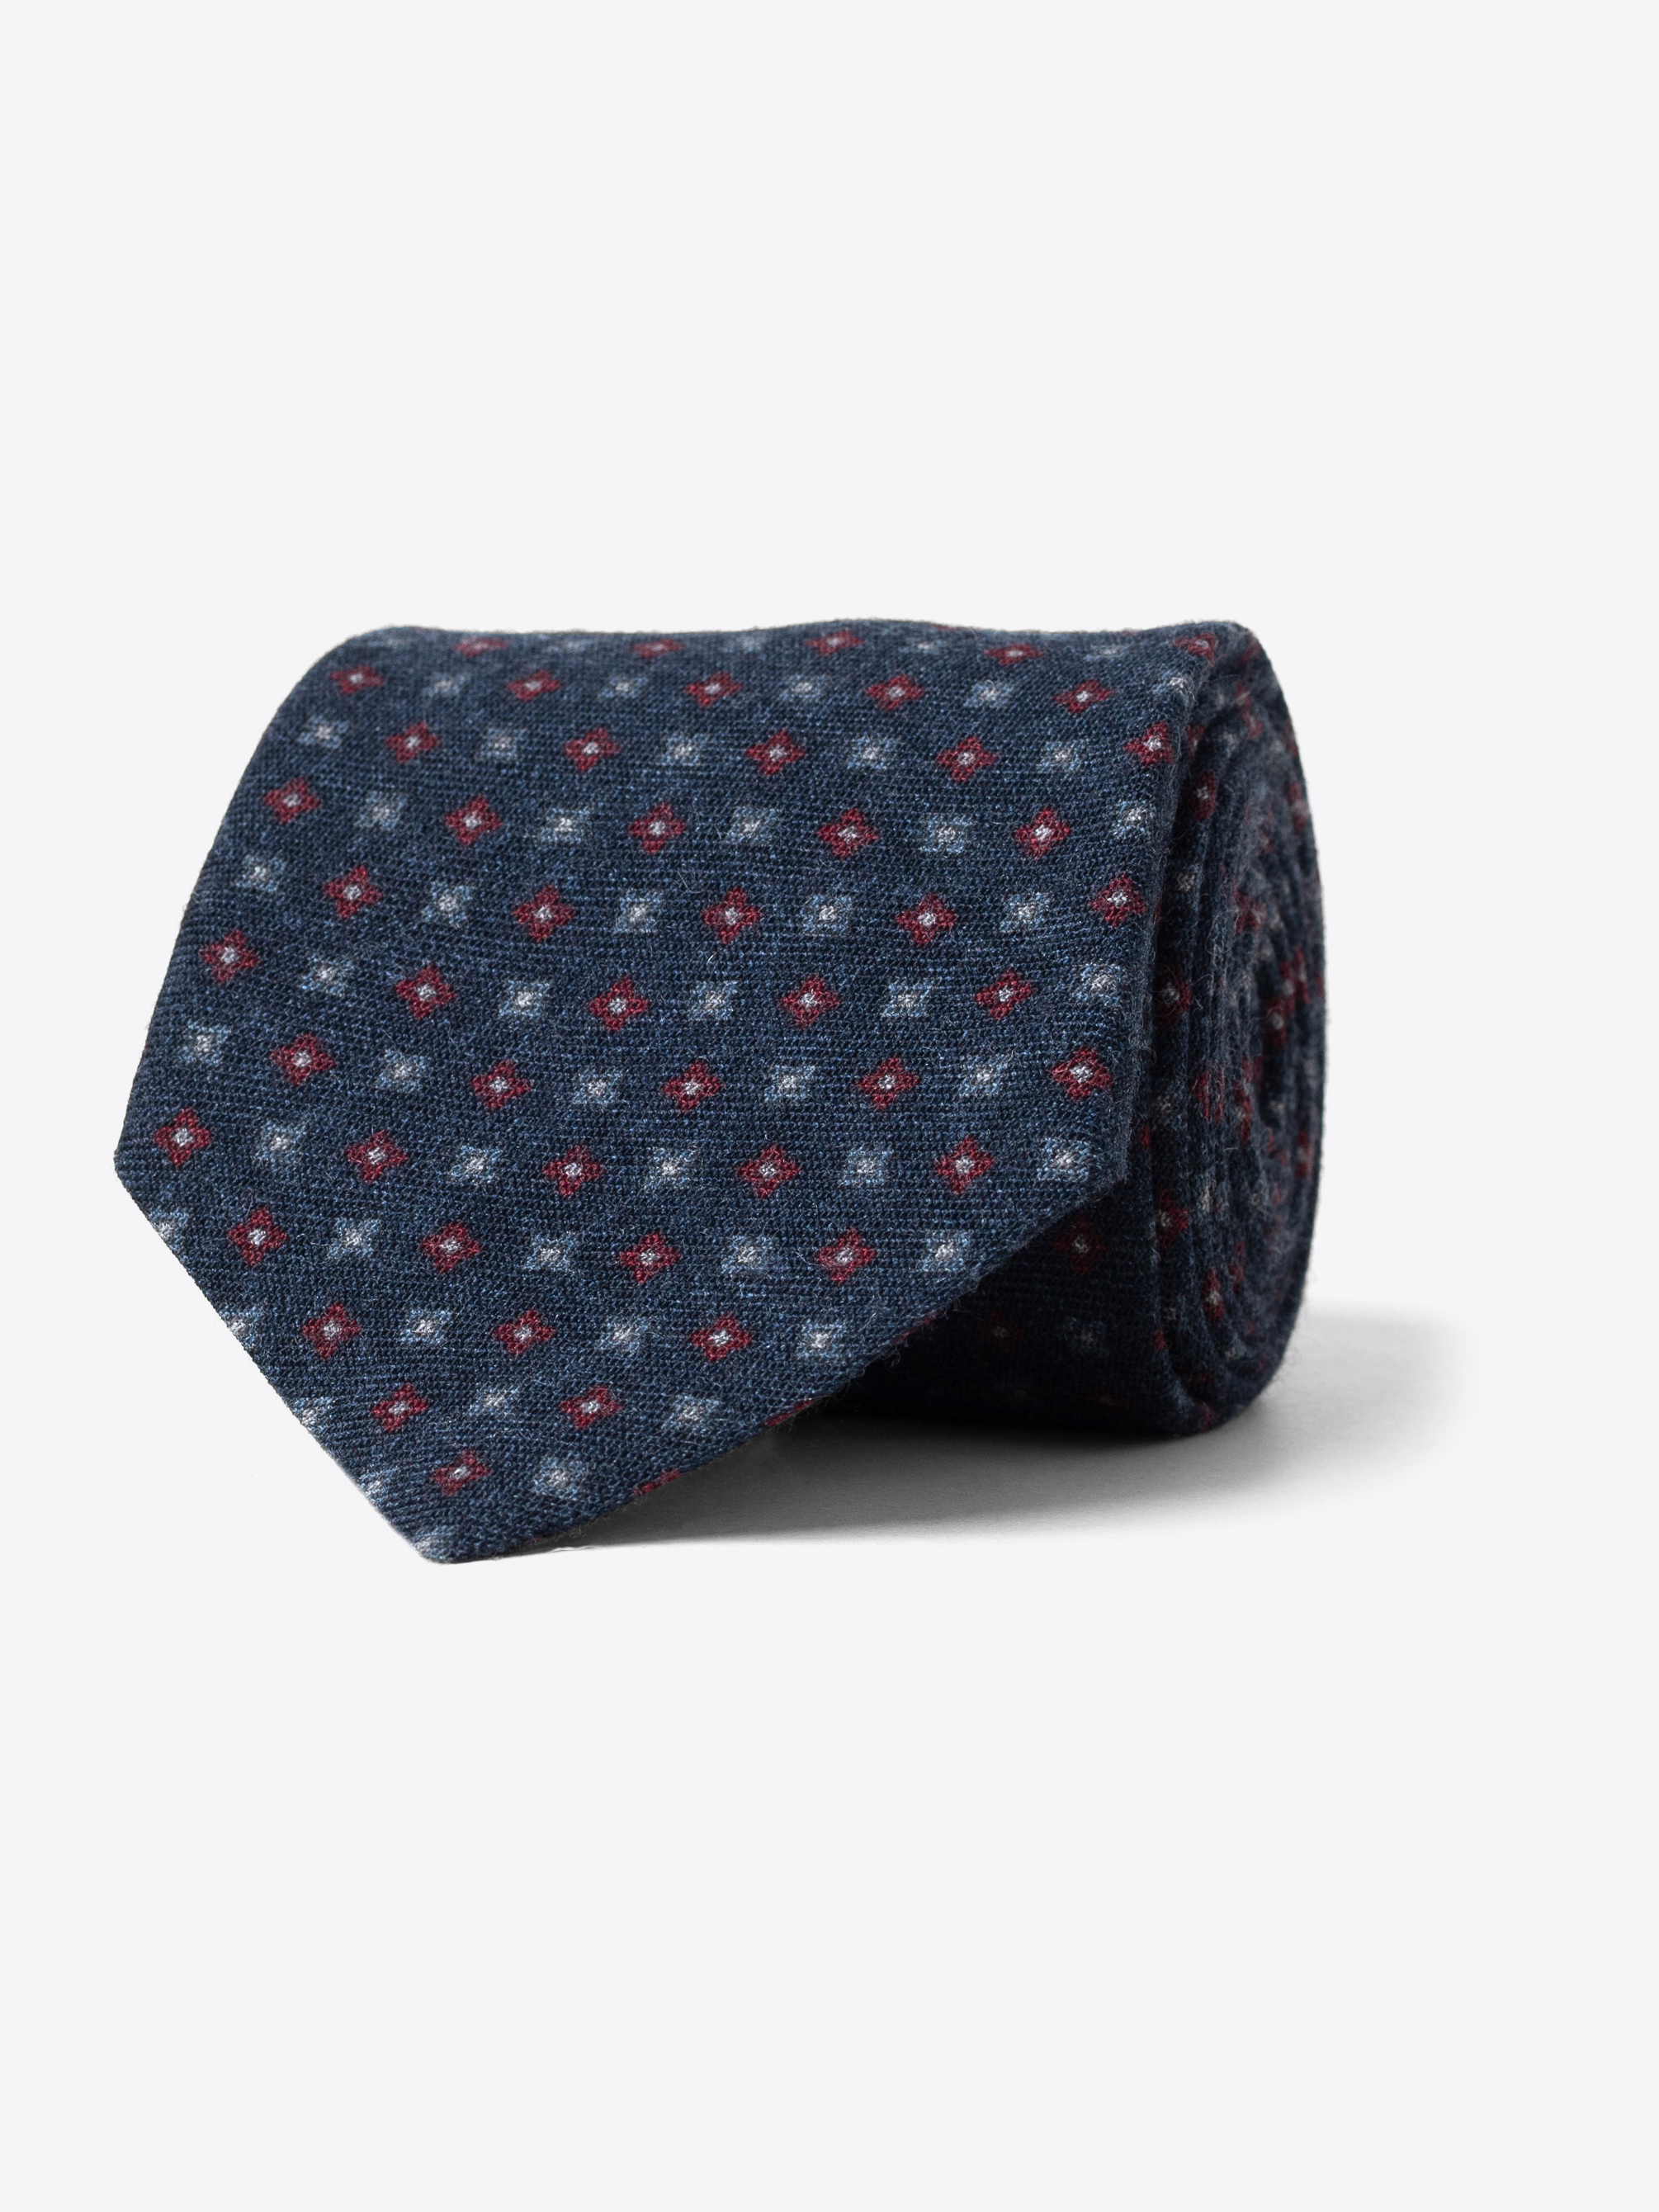 Zoom Image of Navy and Scarlet Foulard Wool Tie